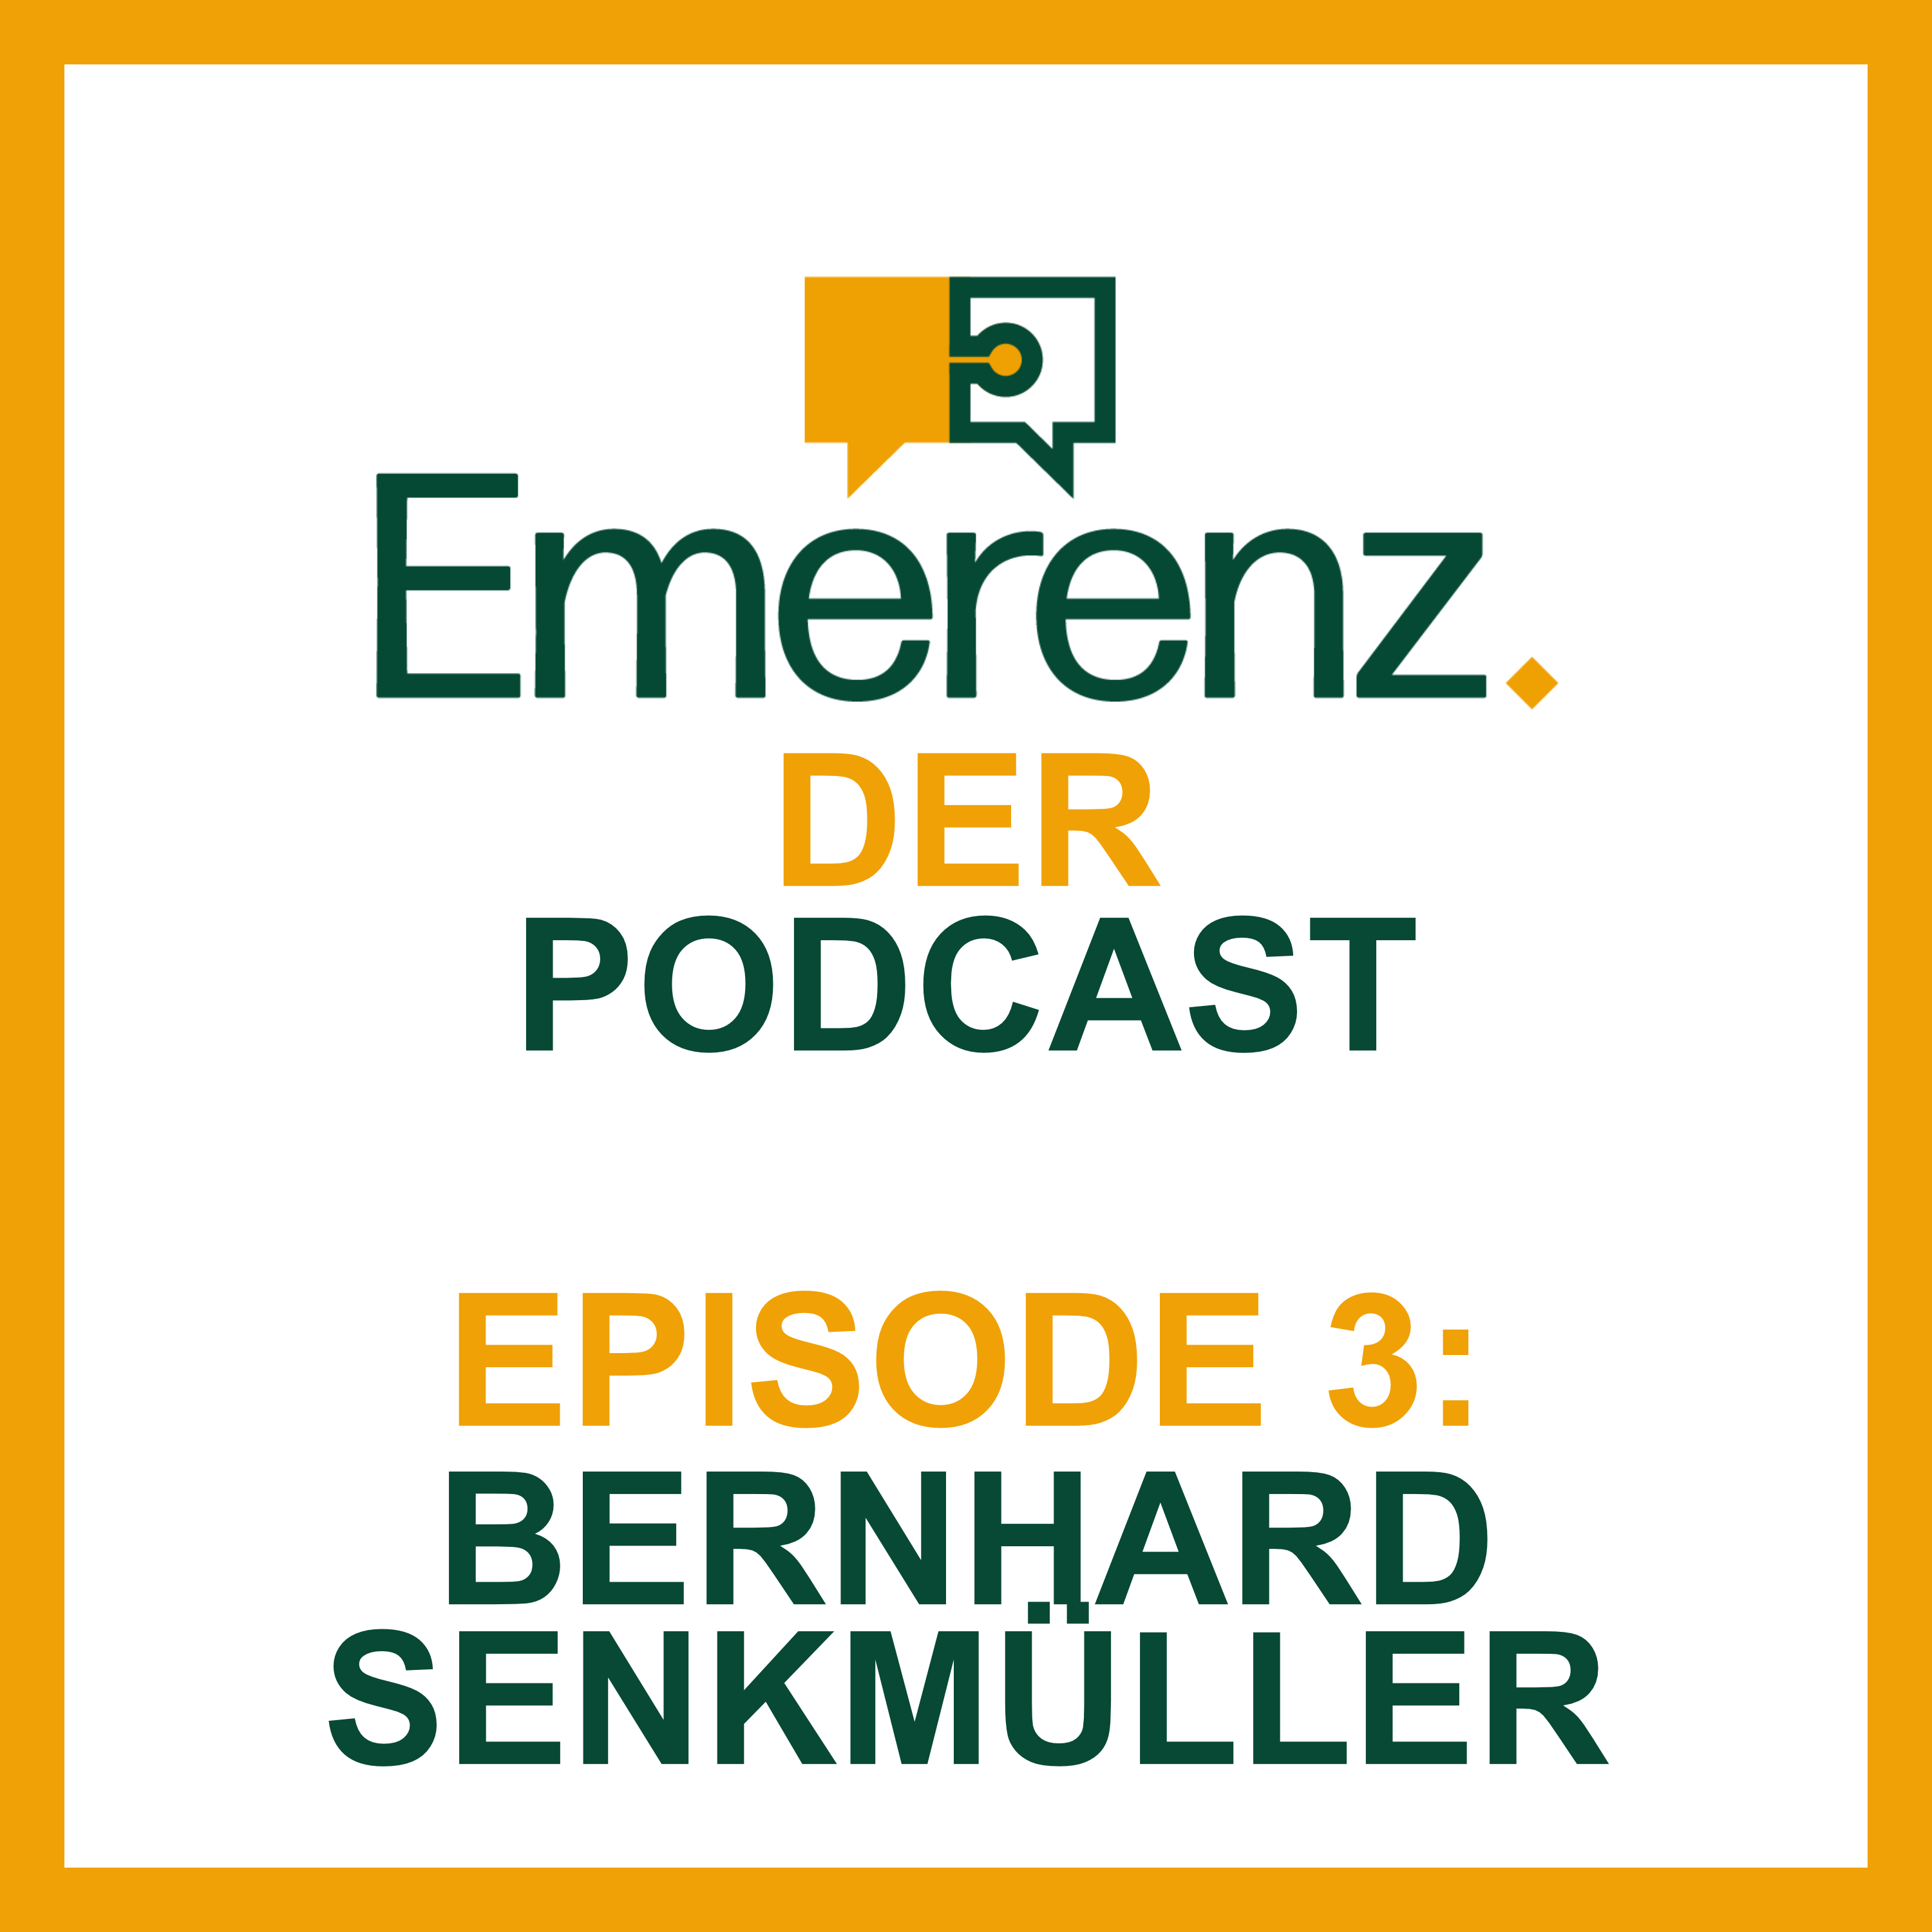 Aufs Wesentliche konzentrieren. Episode 3 mit Bernhard Senkmüller